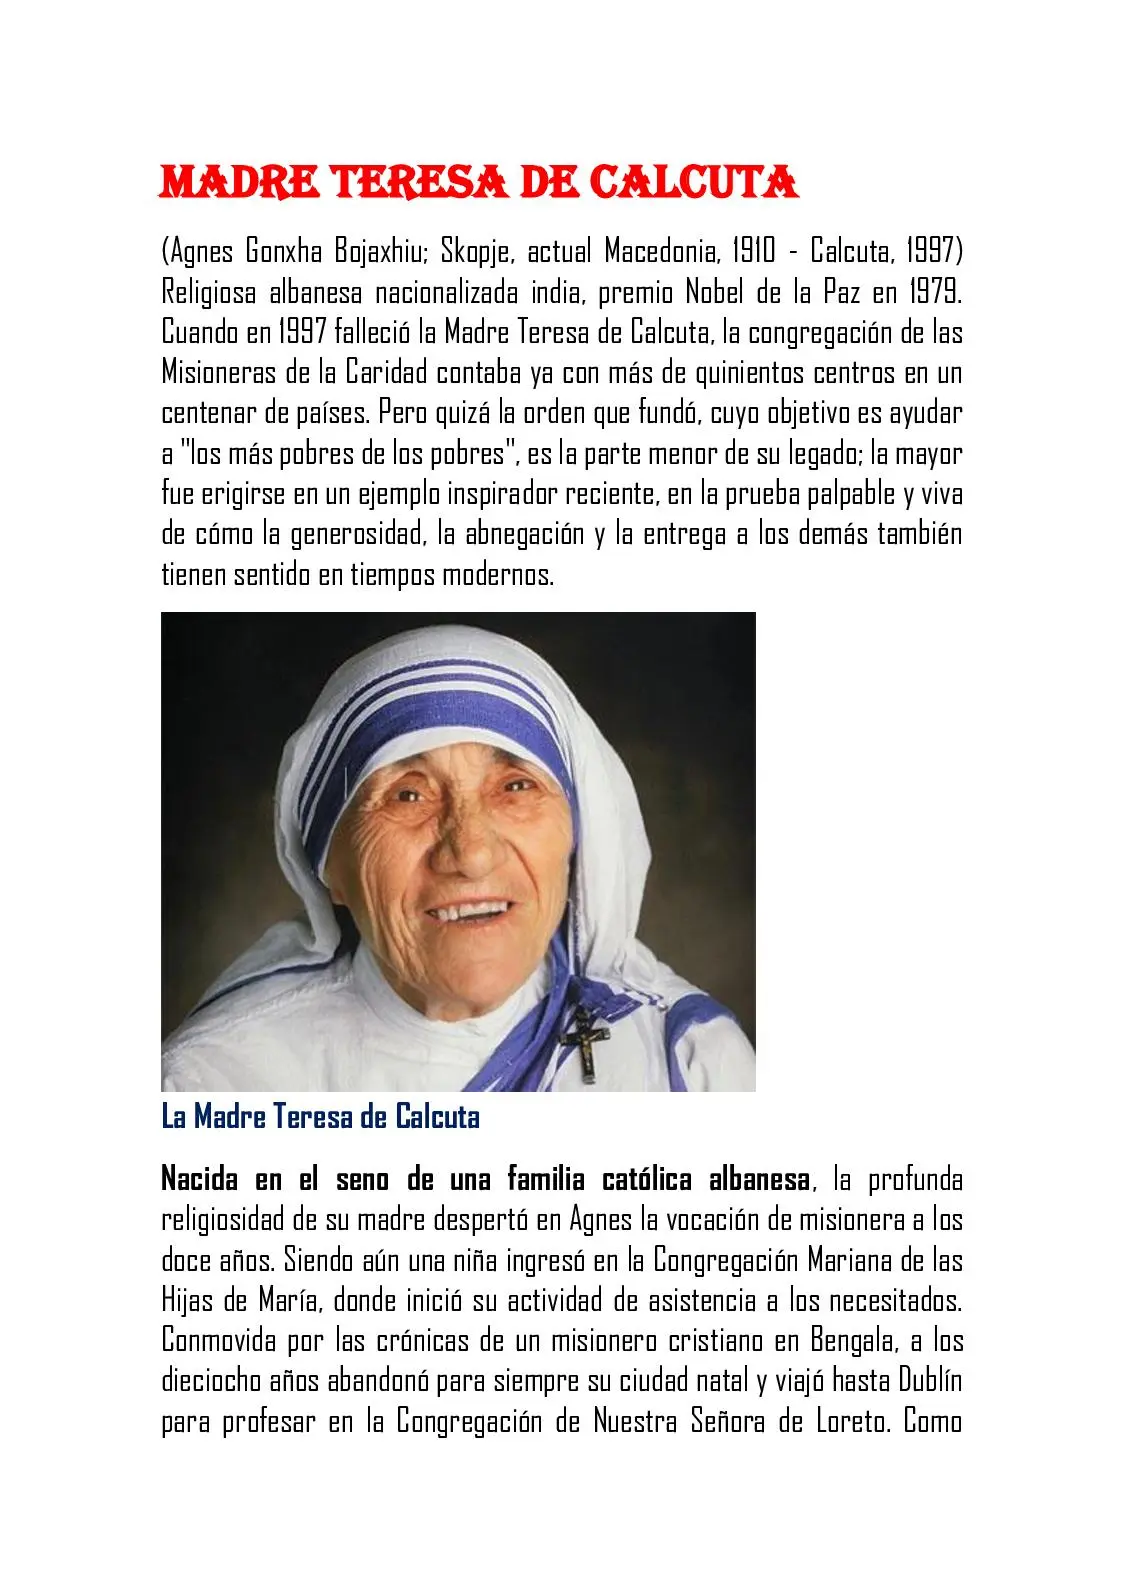 biografia de madre teresa de calcuta resumen corto para niños - Cómo fue la vida de la Madre Teresa de Calcuta